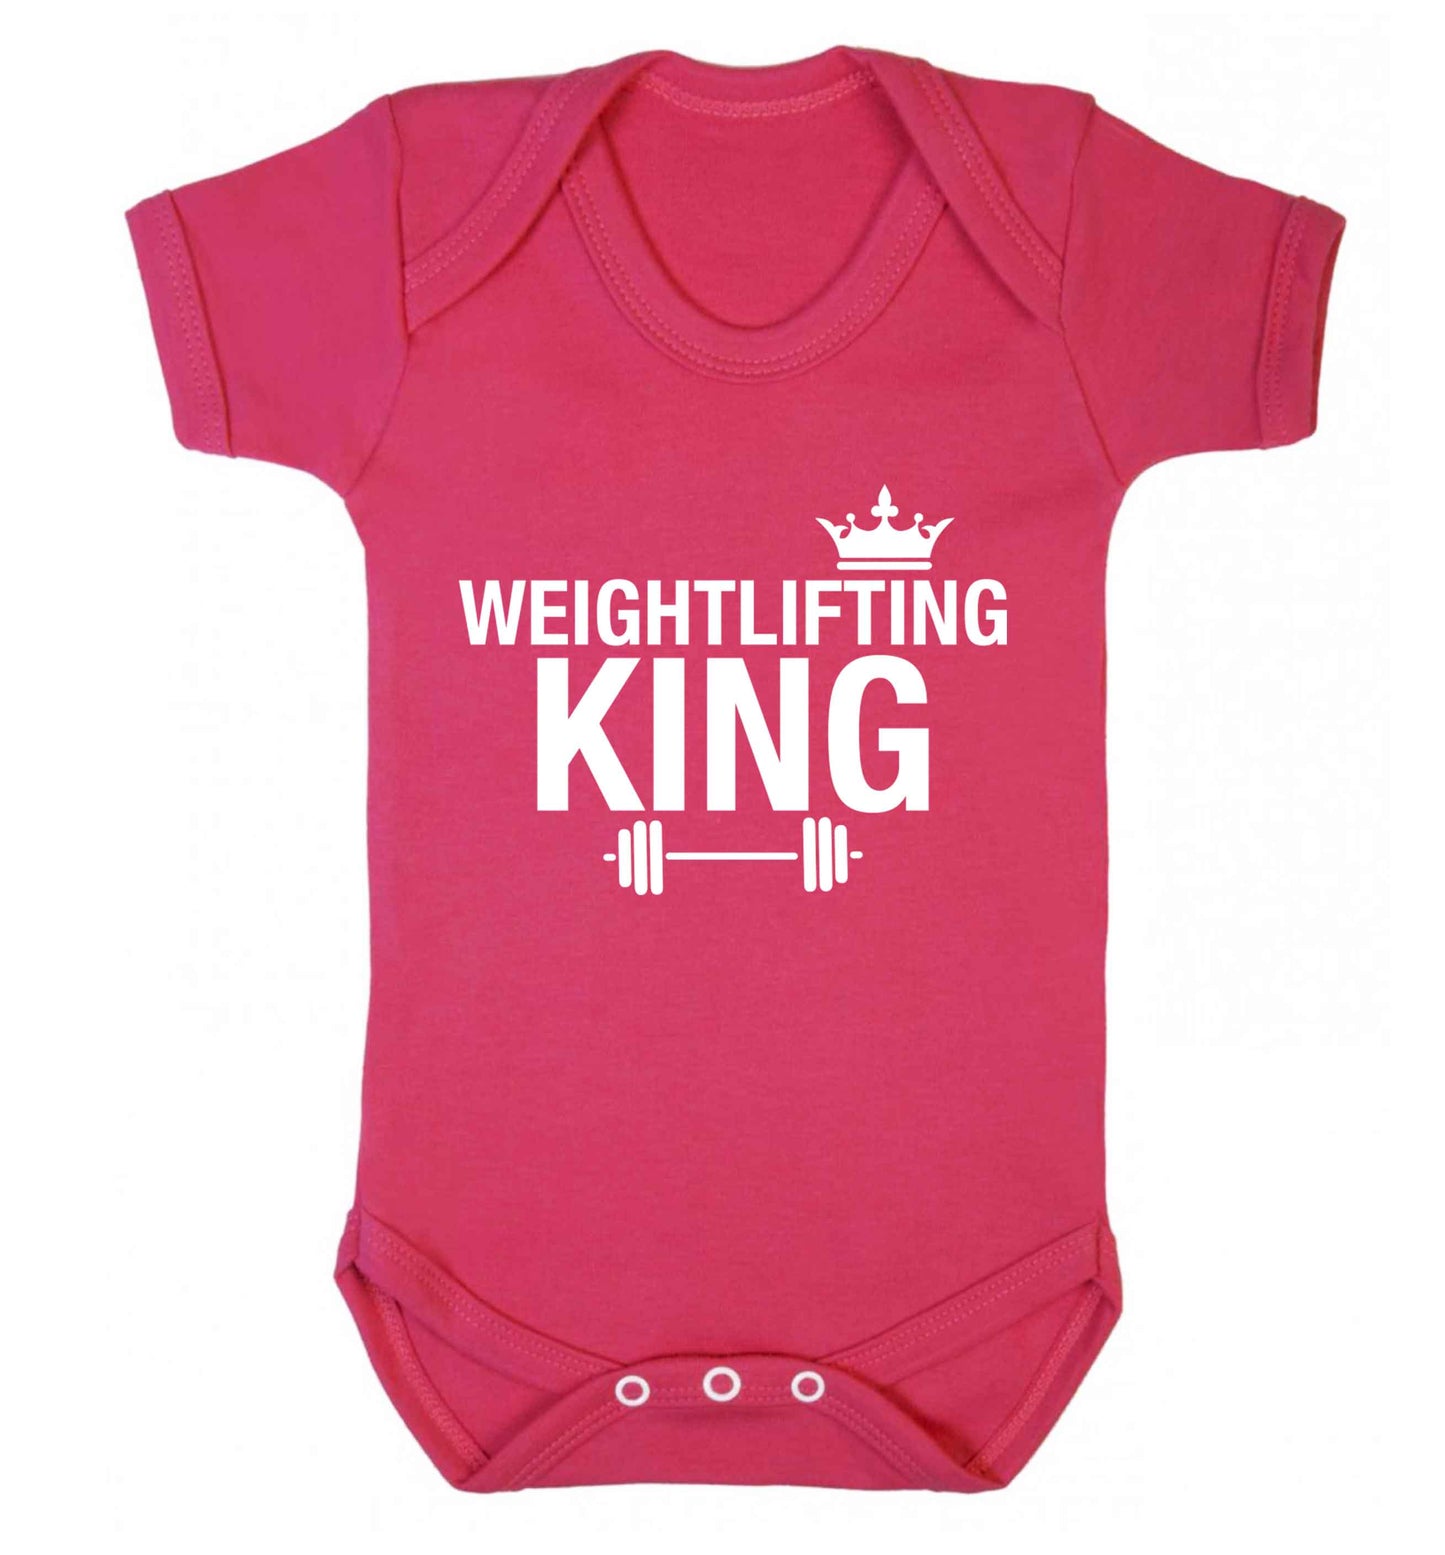 Weightlifting king Baby Vest dark pink 18-24 months